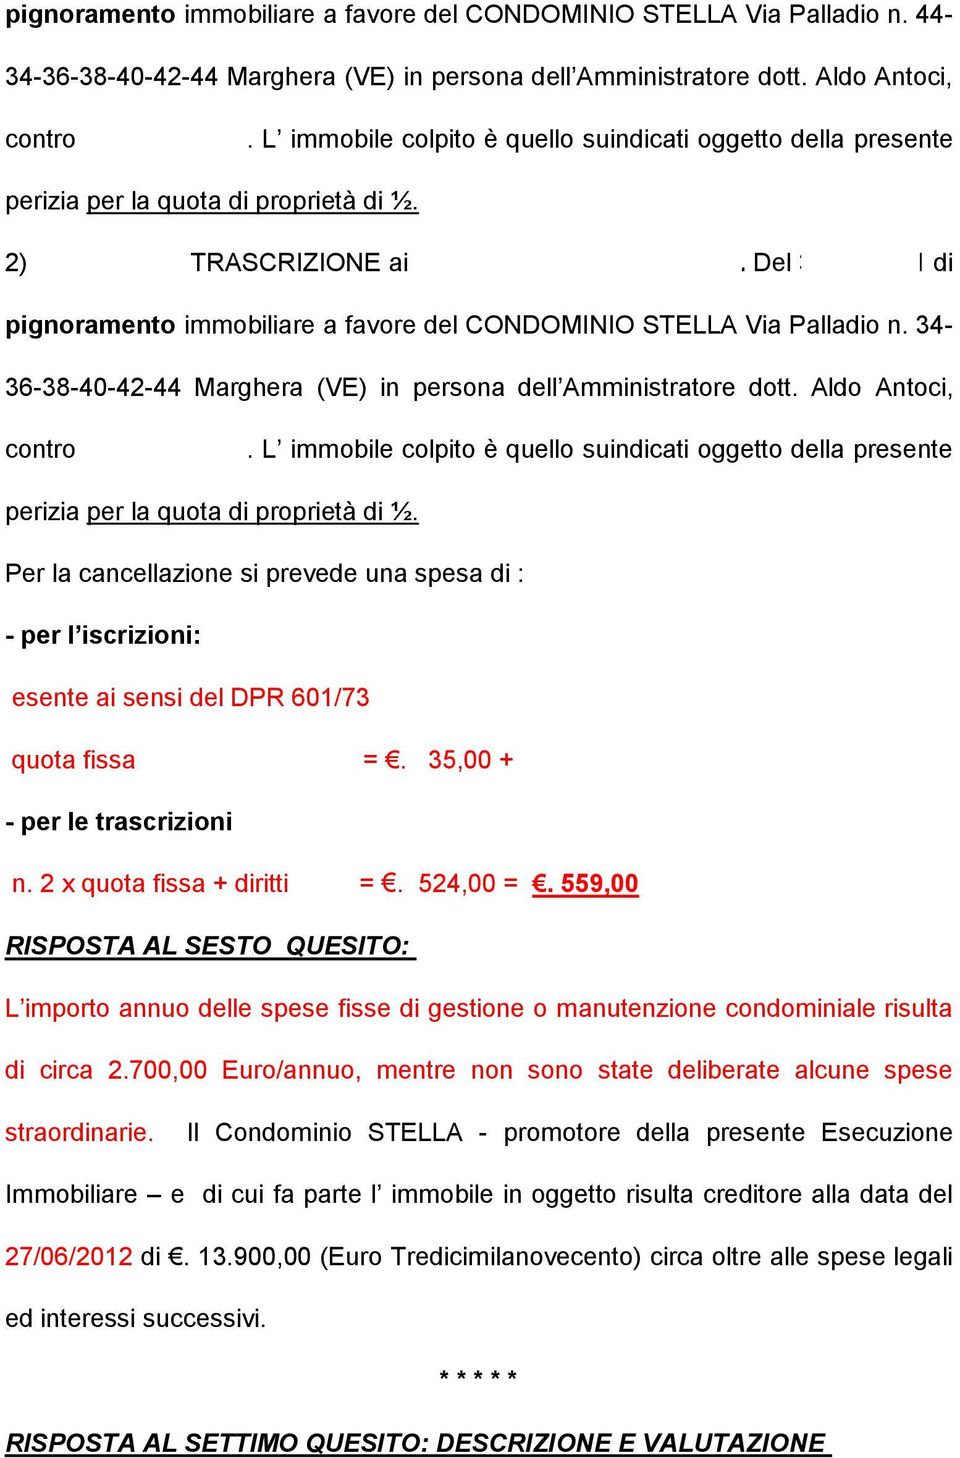 Del 30/11/2011 di pignoramento immobiliare a favore del CONDOMINIO STELLA Via Palladio n. 34-36-38-40-42-44 Marghera (VE) in persona dell Amministratore dott. Aldo Antoci, contro UDDIN Nizam.